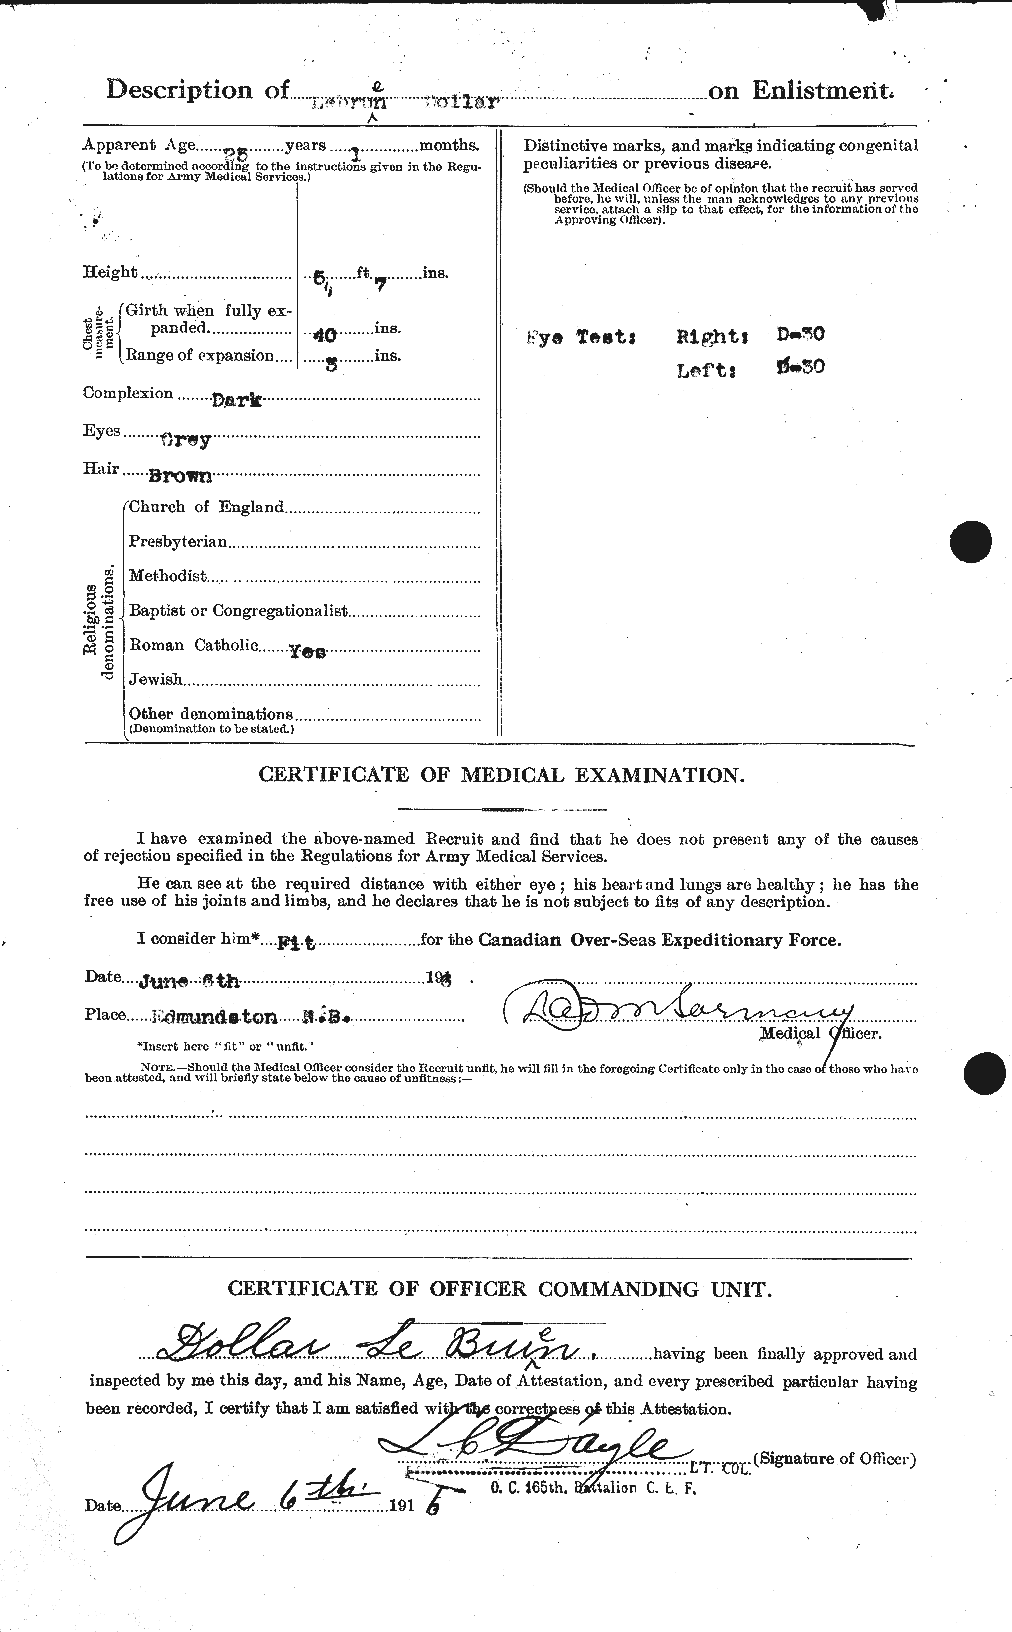 Dossiers du Personnel de la Première Guerre mondiale - CEC 461541b